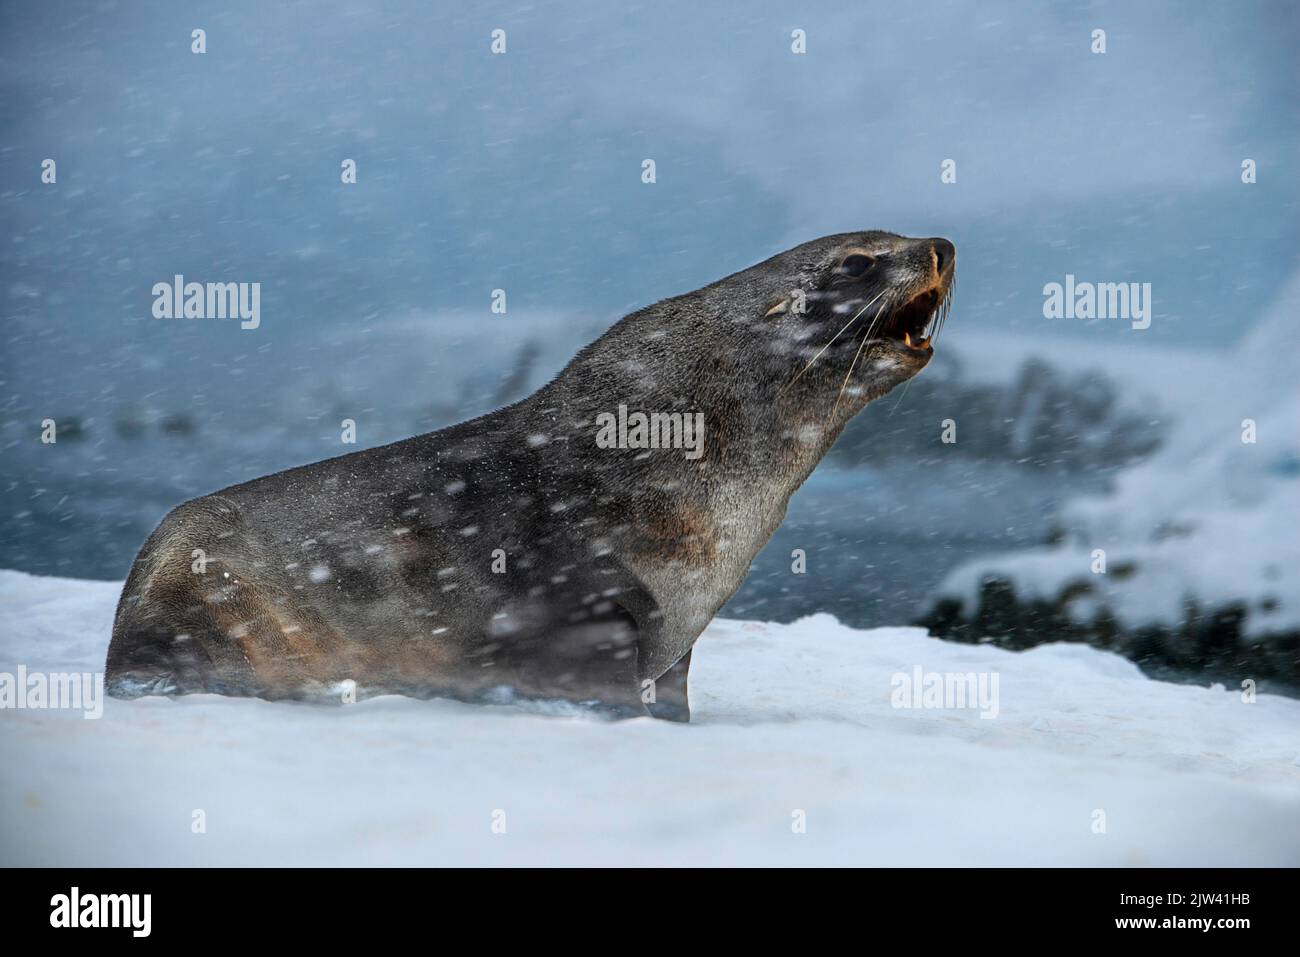 Un phoque à fourrure de l'Antarctique, Arctocephalus gazella, sous une forte chute de neige, Portal point, Antarctique. Fusion des pôles. L'Antarctique est le continent Banque D'Images